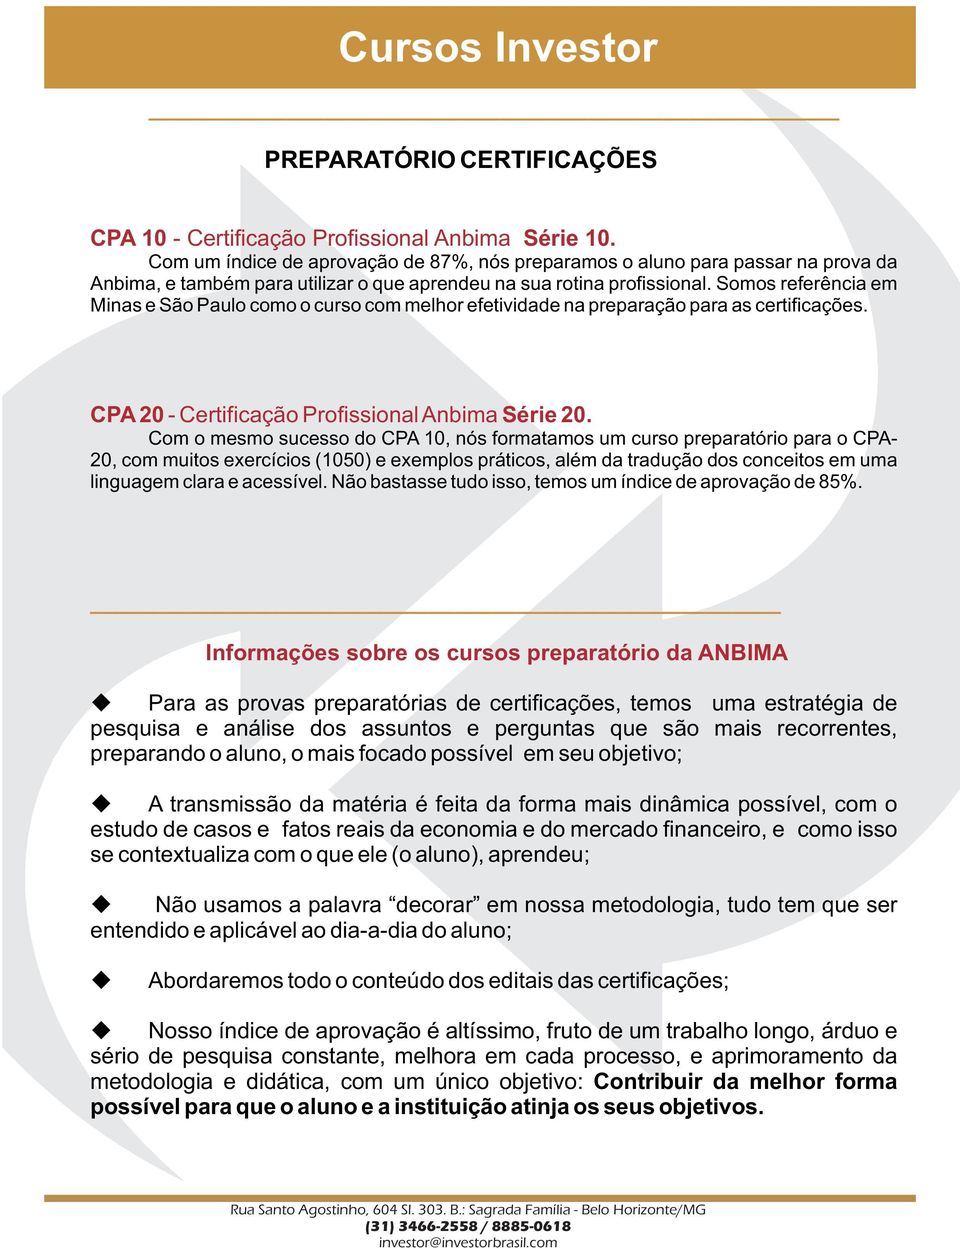 Somos referência em Minas e São Paulo como o curso com melhor efetividade na preparação para as certificações. CPA 20 - Certificação Profissional Anbima Série 20.